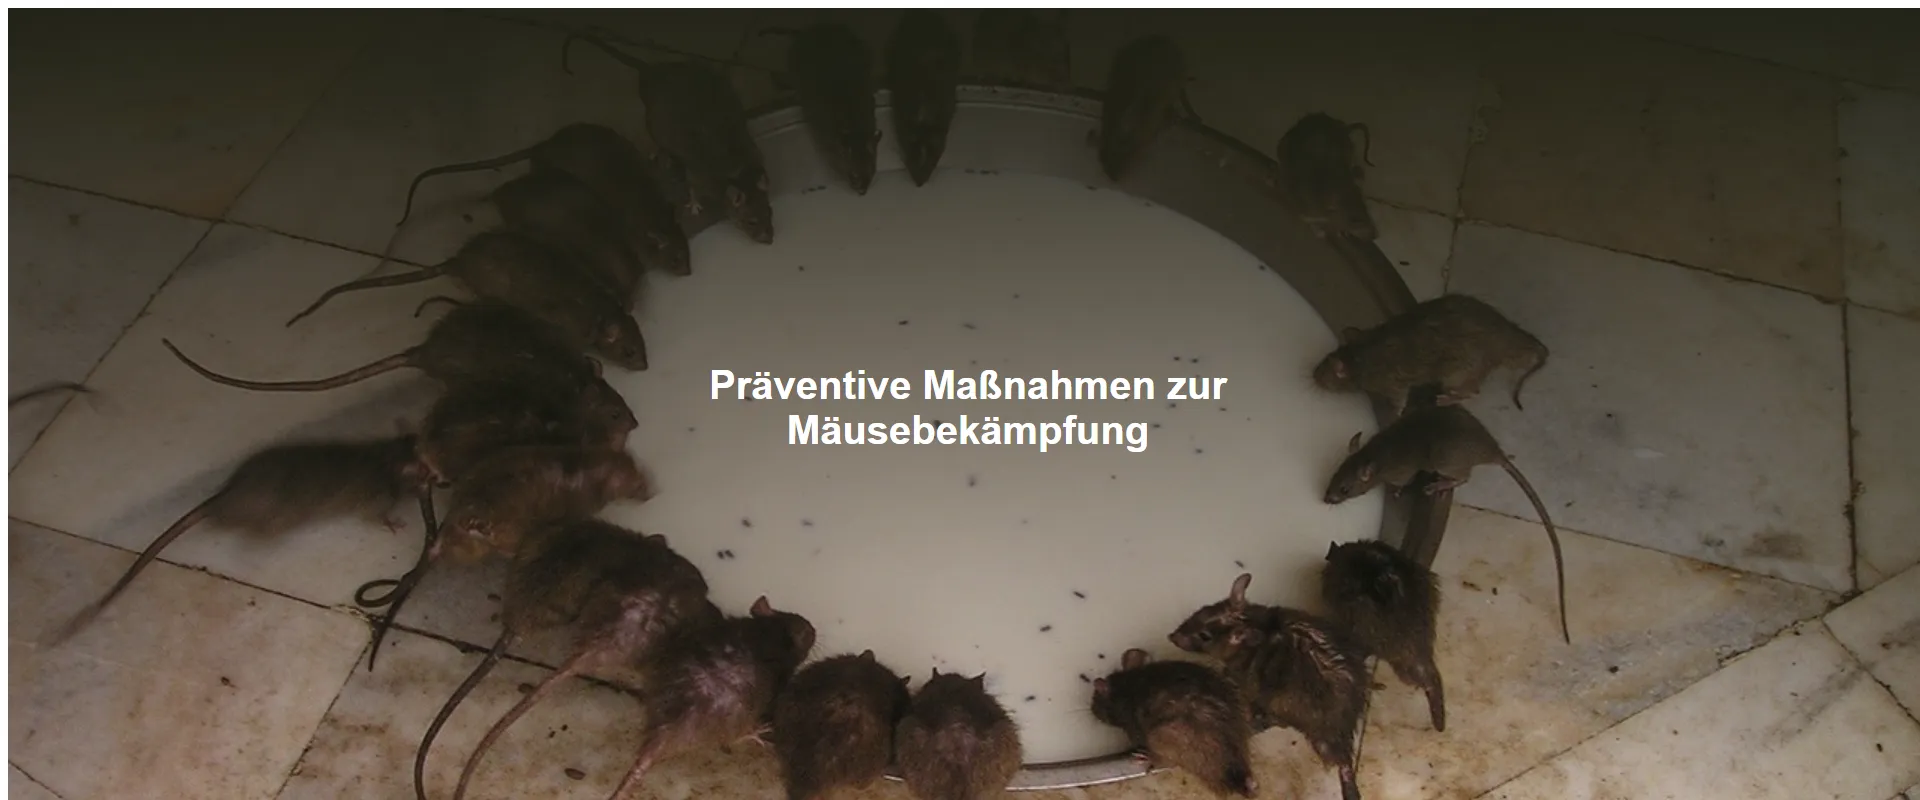 Präventive Maßnahmen zur Mäusebekämpfung